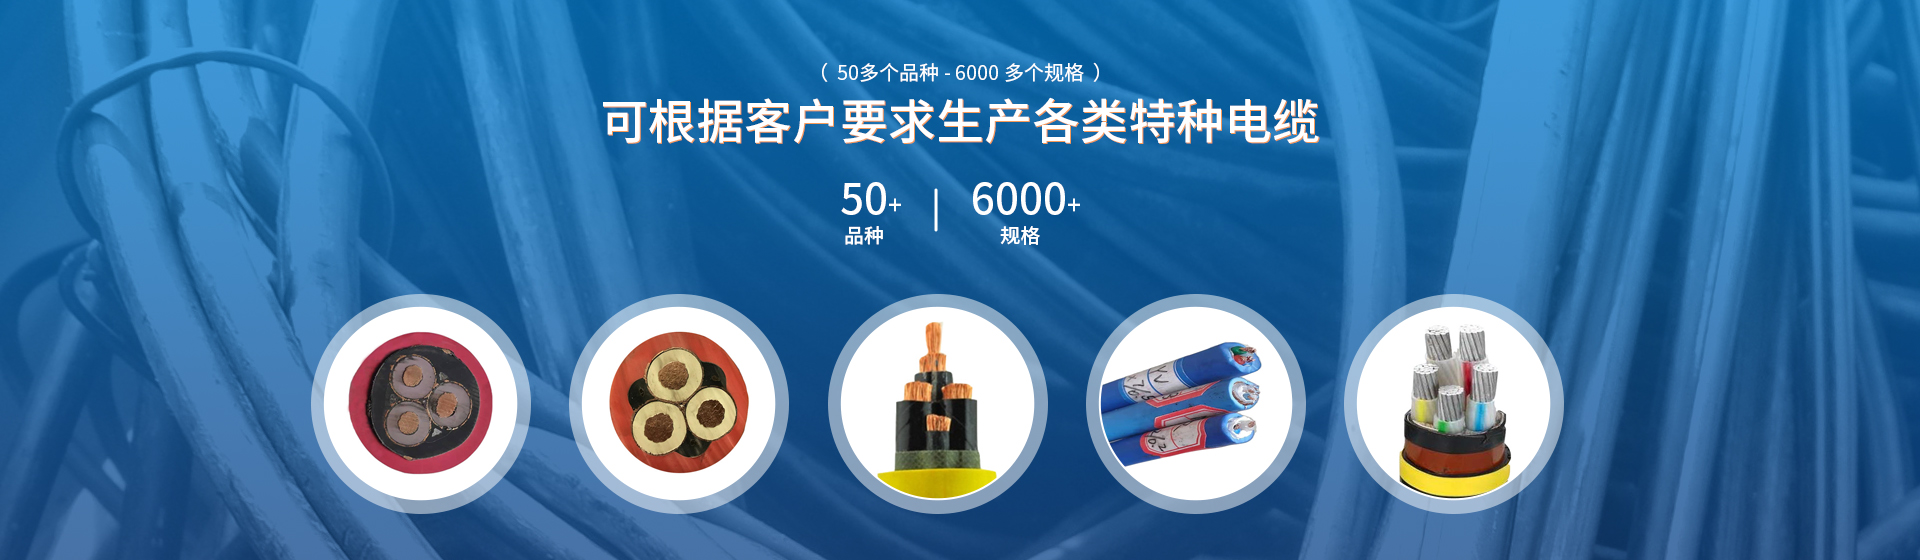 重庆电线电缆，重庆电缆厂家，重庆科飞线缆有限公司